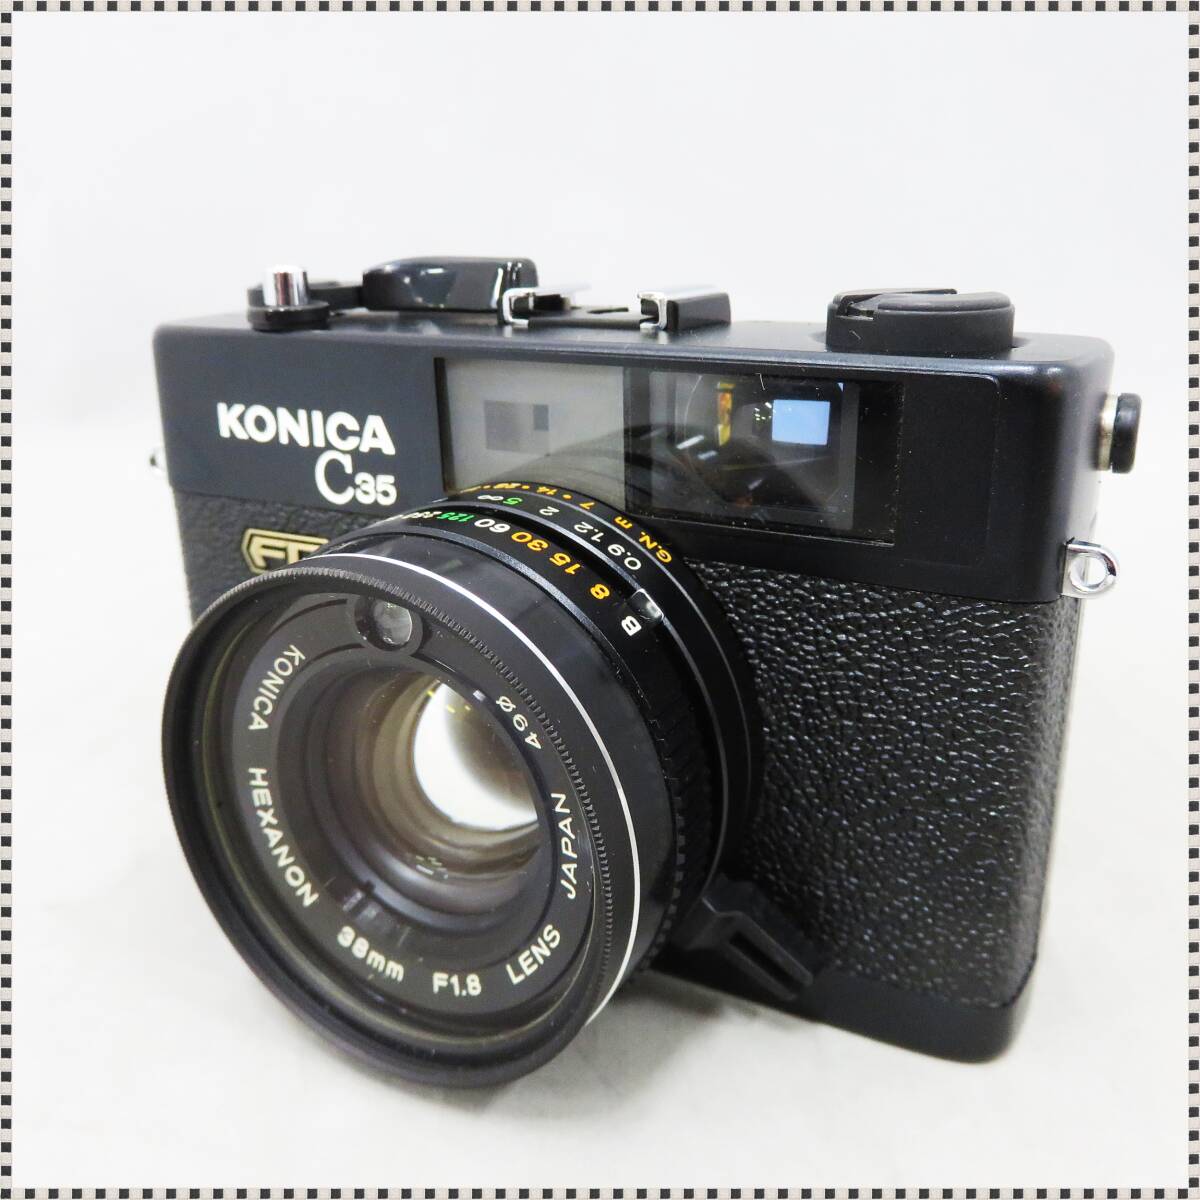 【 シャッターOK 】 コニカ C35 FD ブラック HEXANON 38mm f/1.8 レンジファインダー コンパクトフィルムカメラ Konica HA032202_画像1